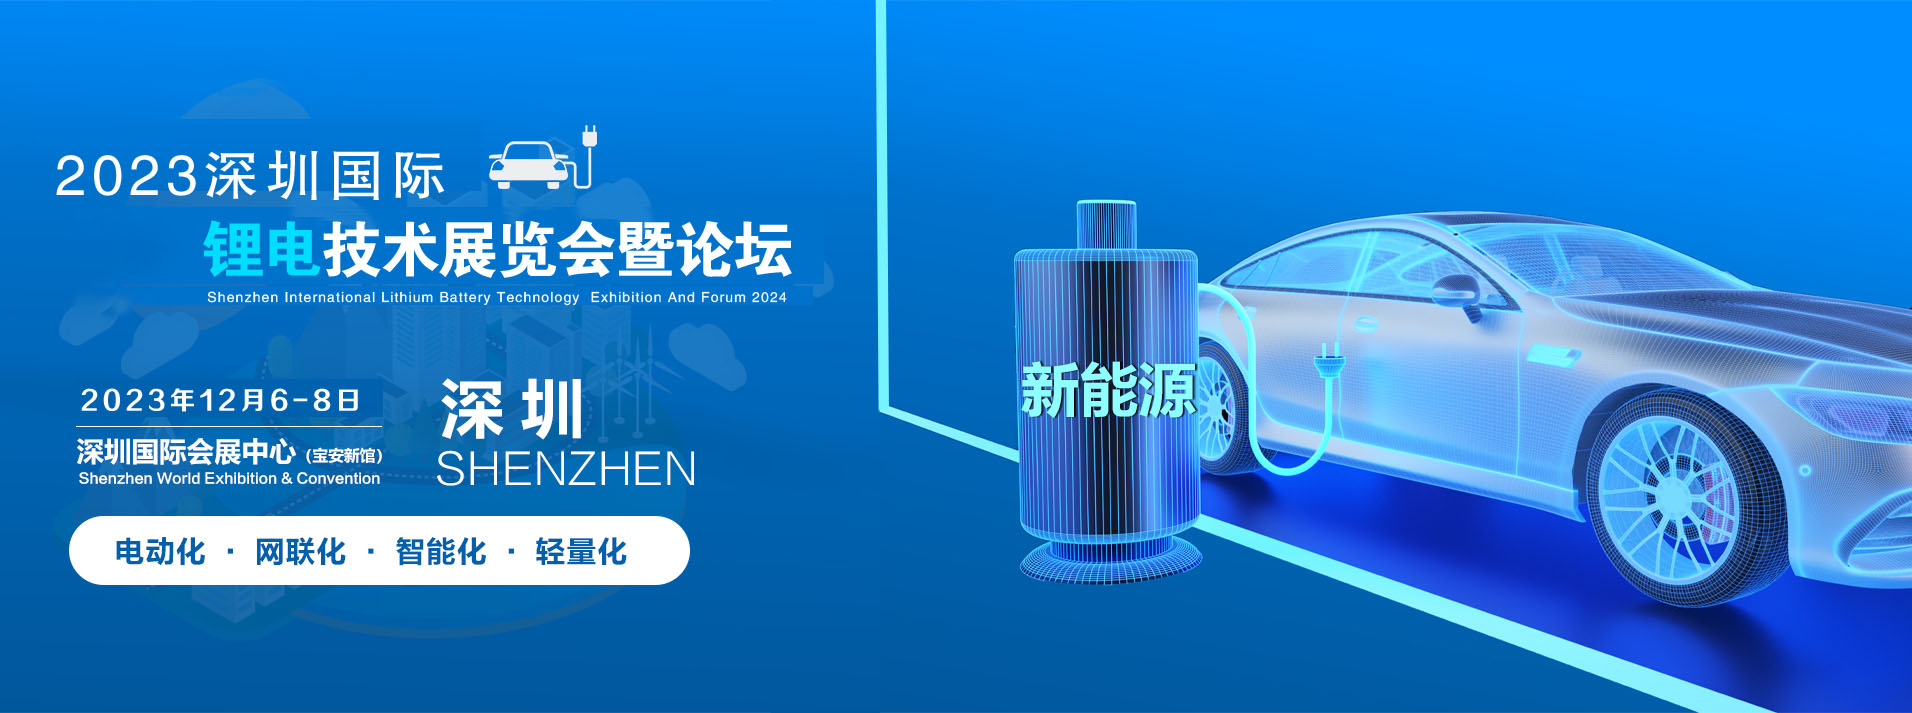 2022深圳国际锂电池技术展览会11-12月华南启幕